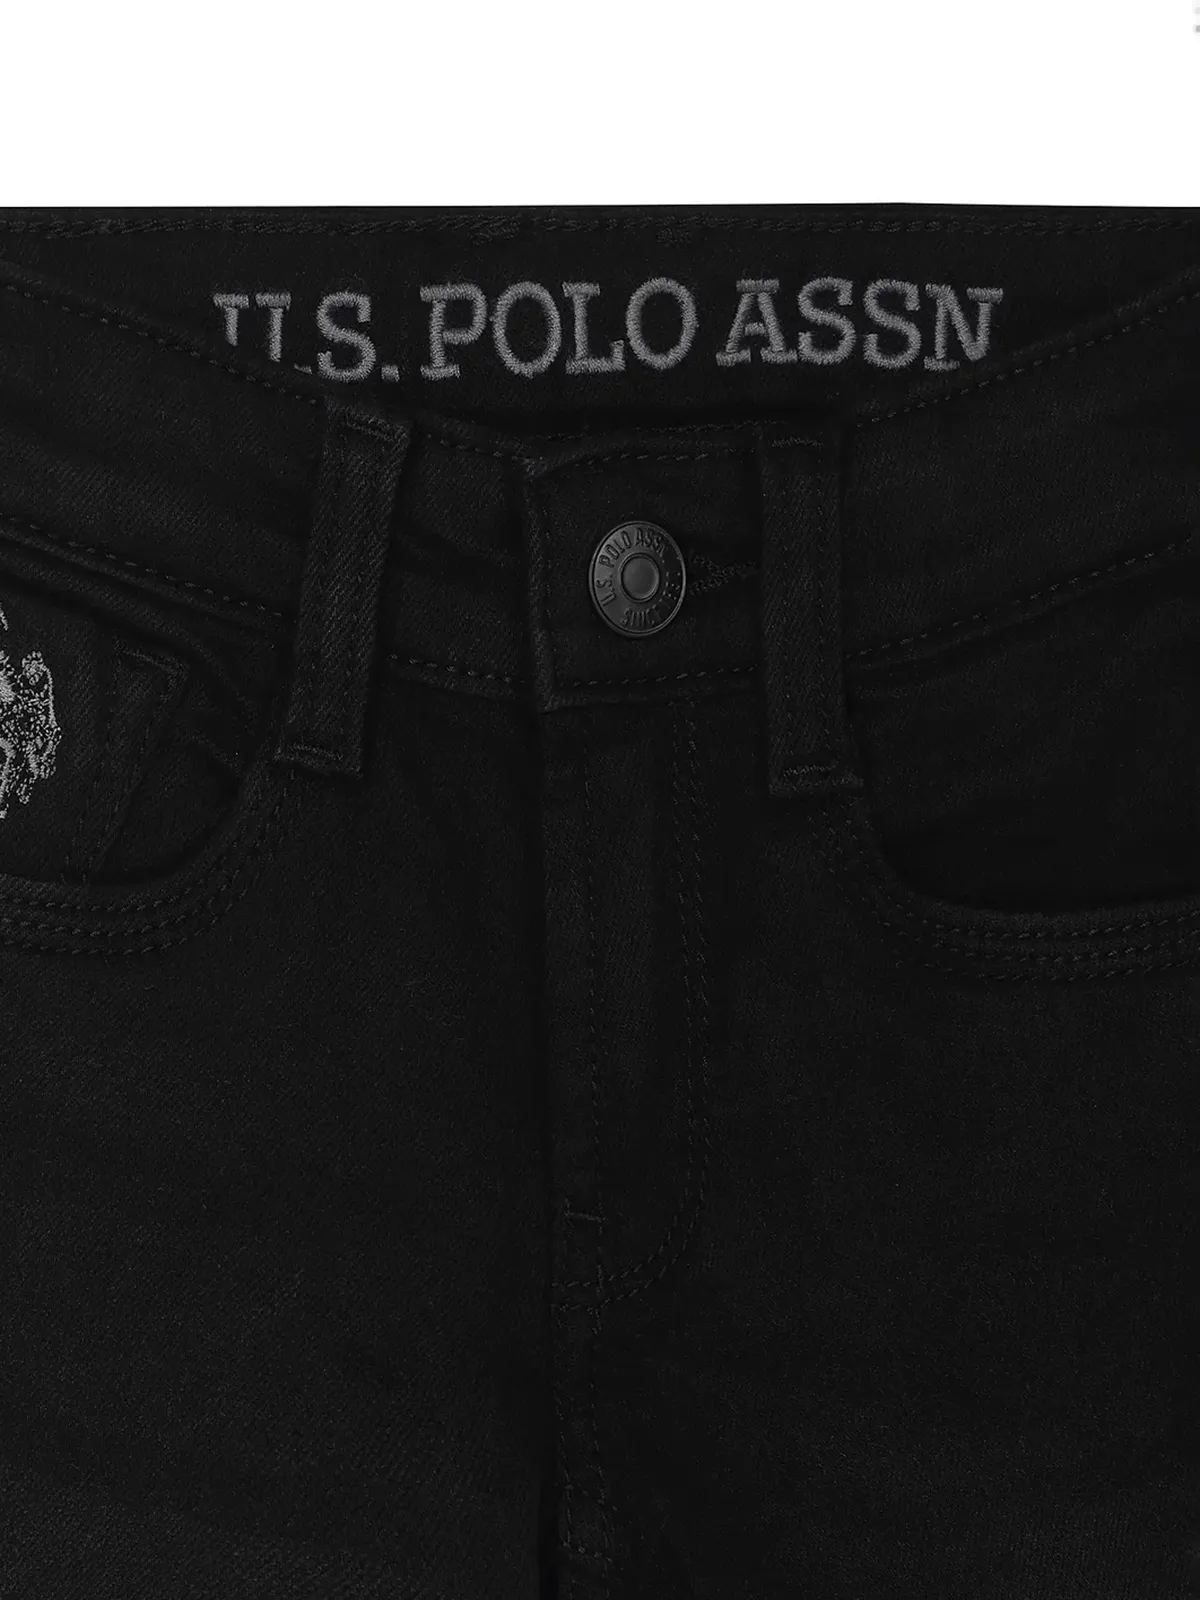 U S POLO ASSN black jeans for boys